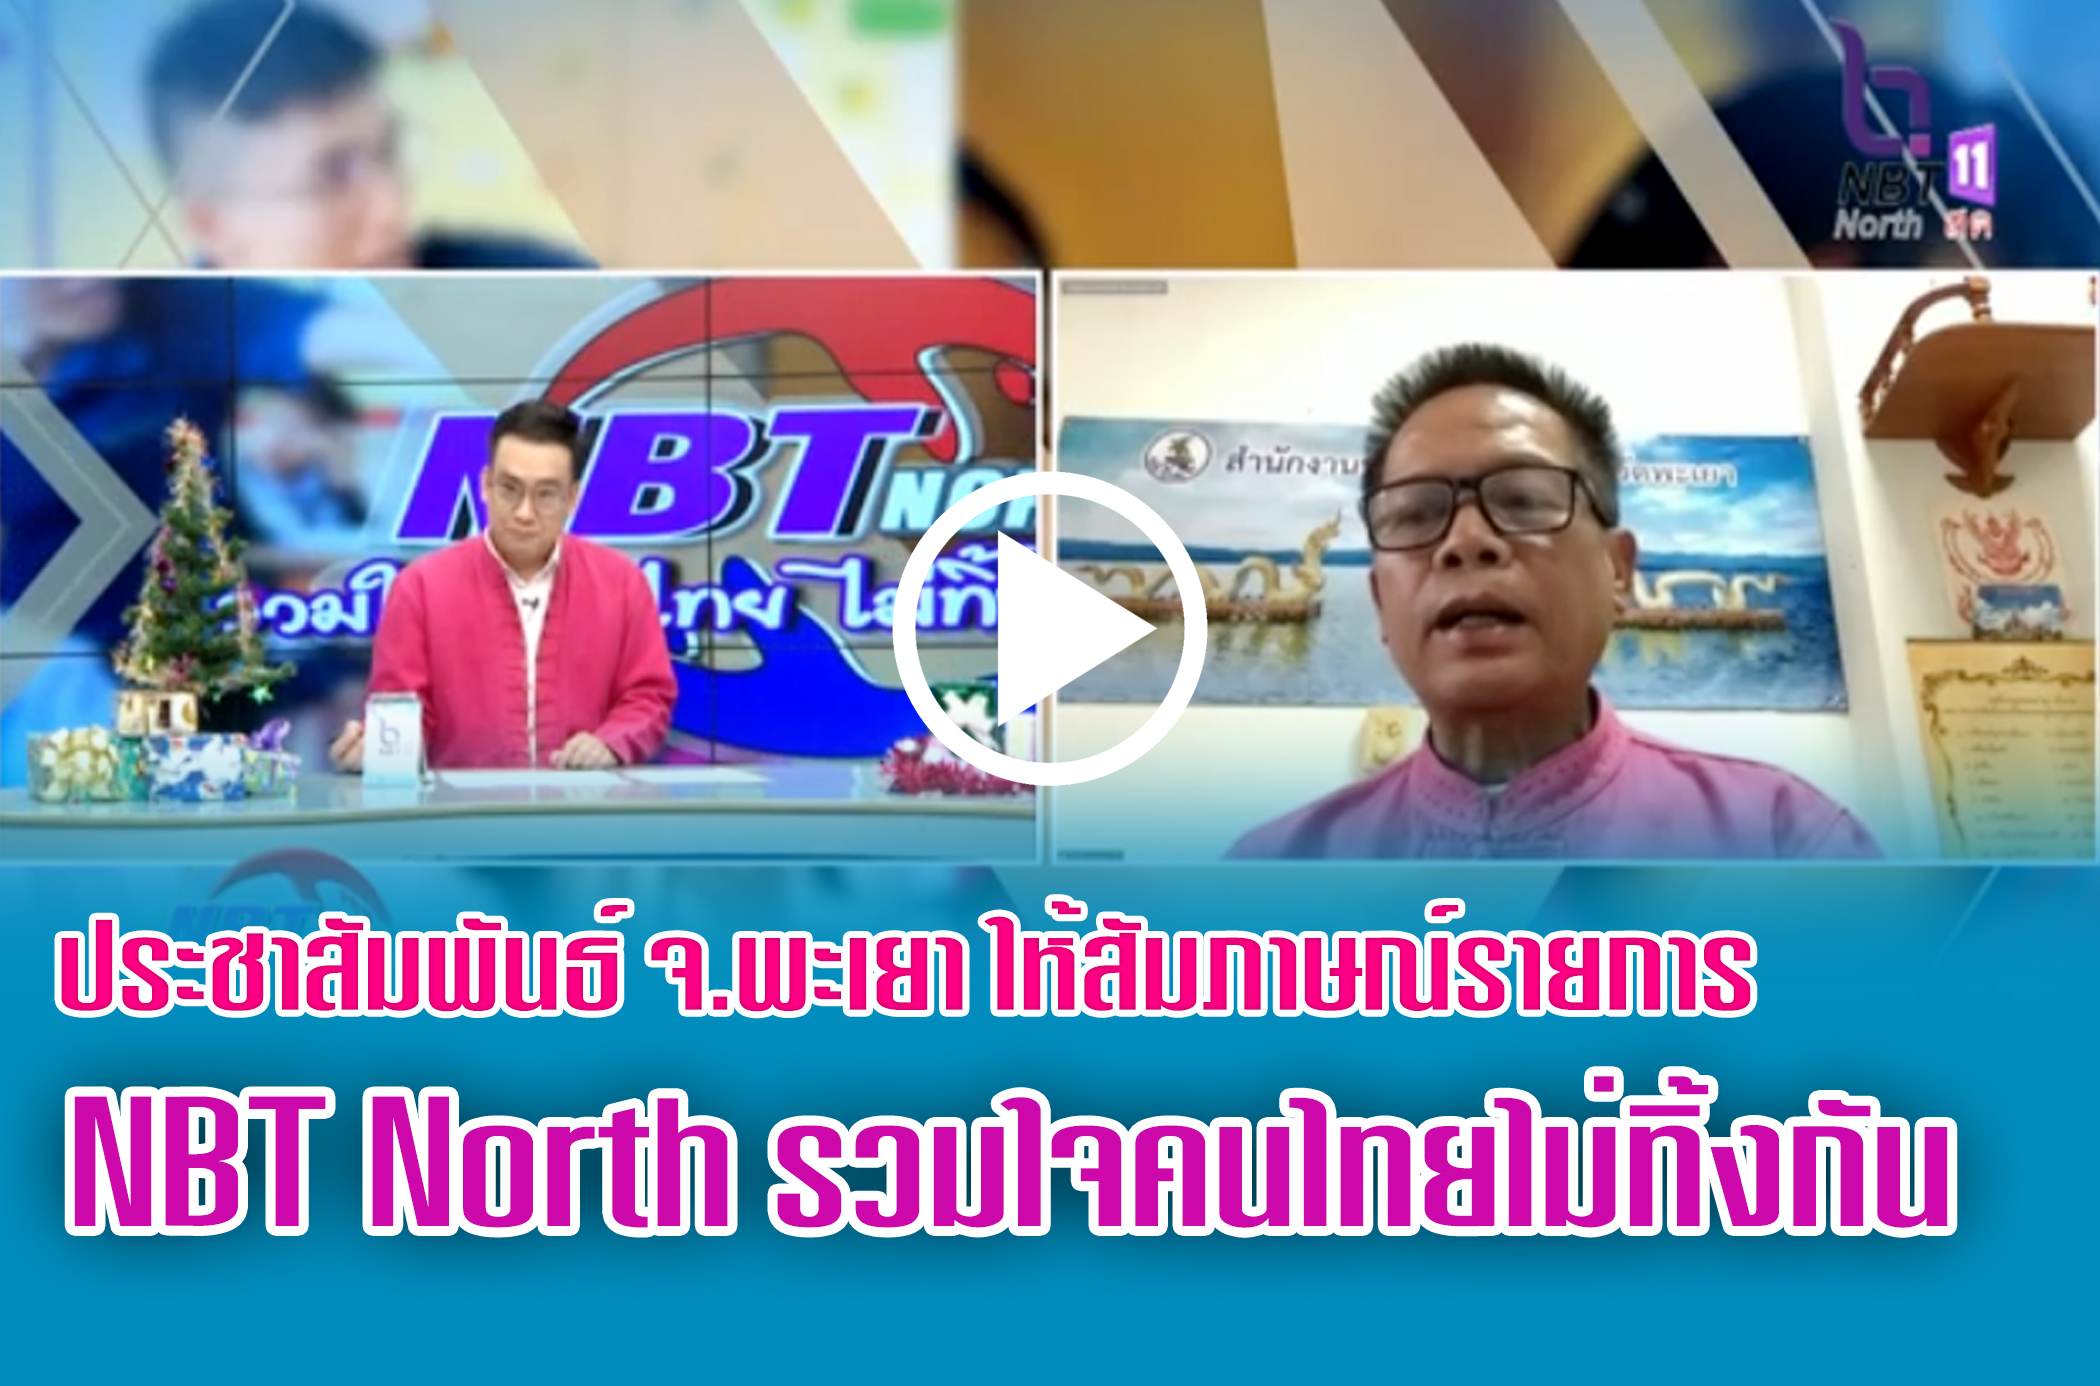 ประชาสัมพันธ์จังหวัดพะเยา ให้สัมภาษณ์ในรายการ NBT North รวมใจคนไทยไม่ทิ้งกัน